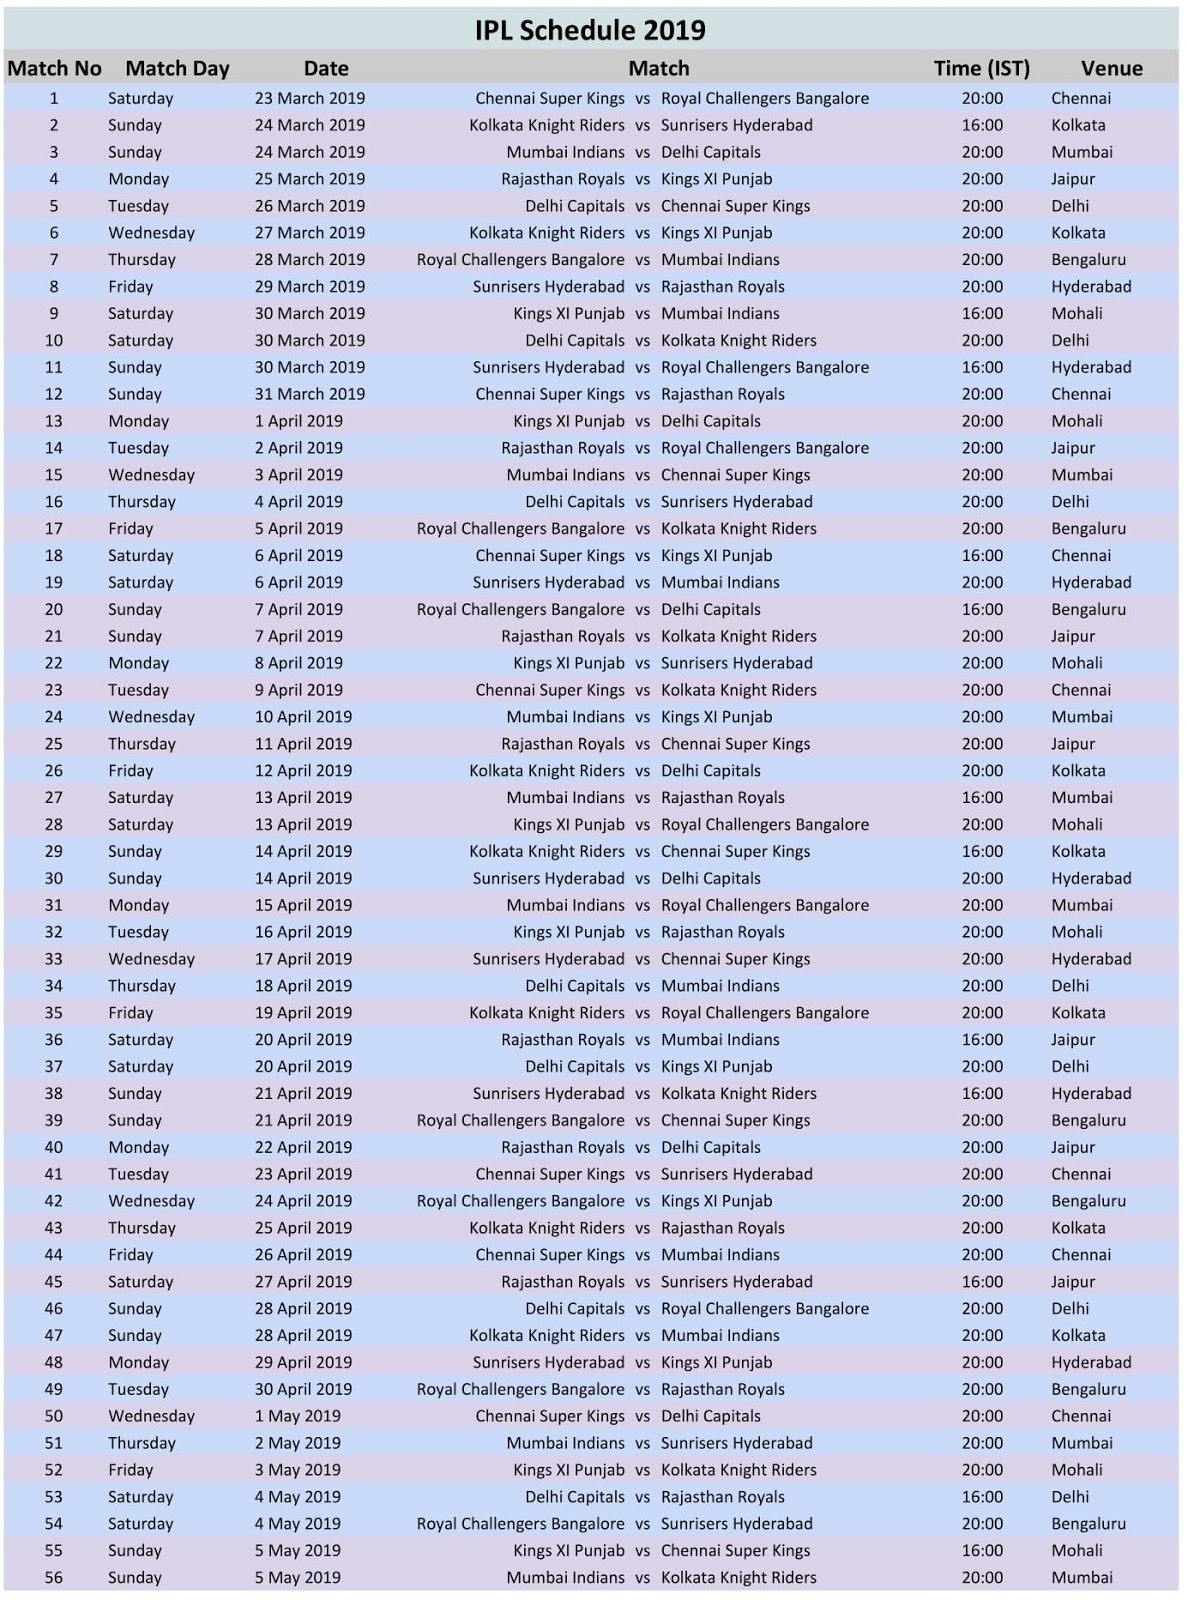 Download VIVO IPL 2019 Full Schedule